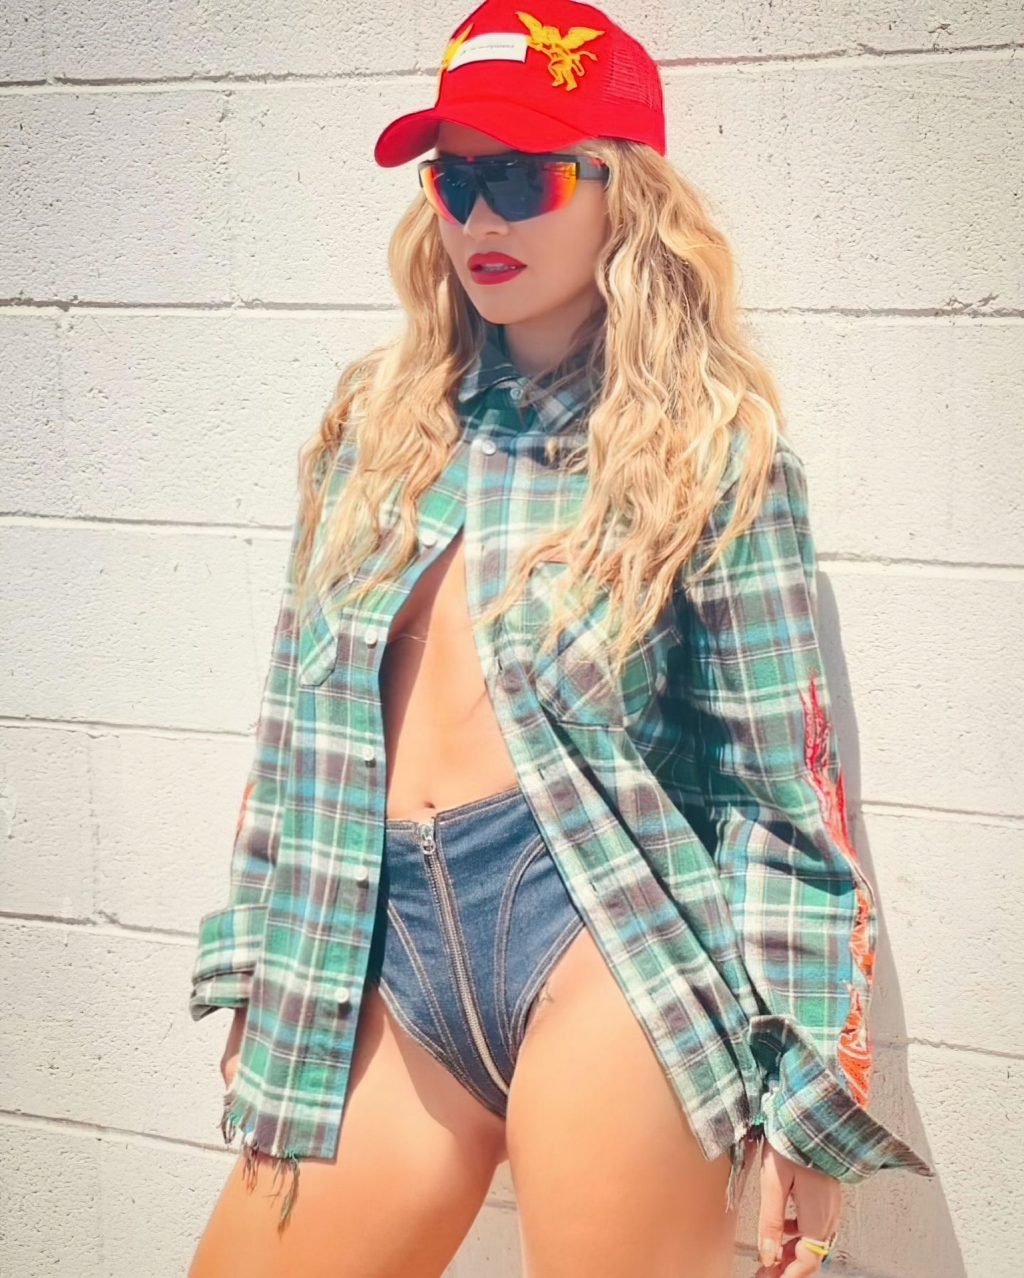 Rita Ora Sexy (28 Photos)